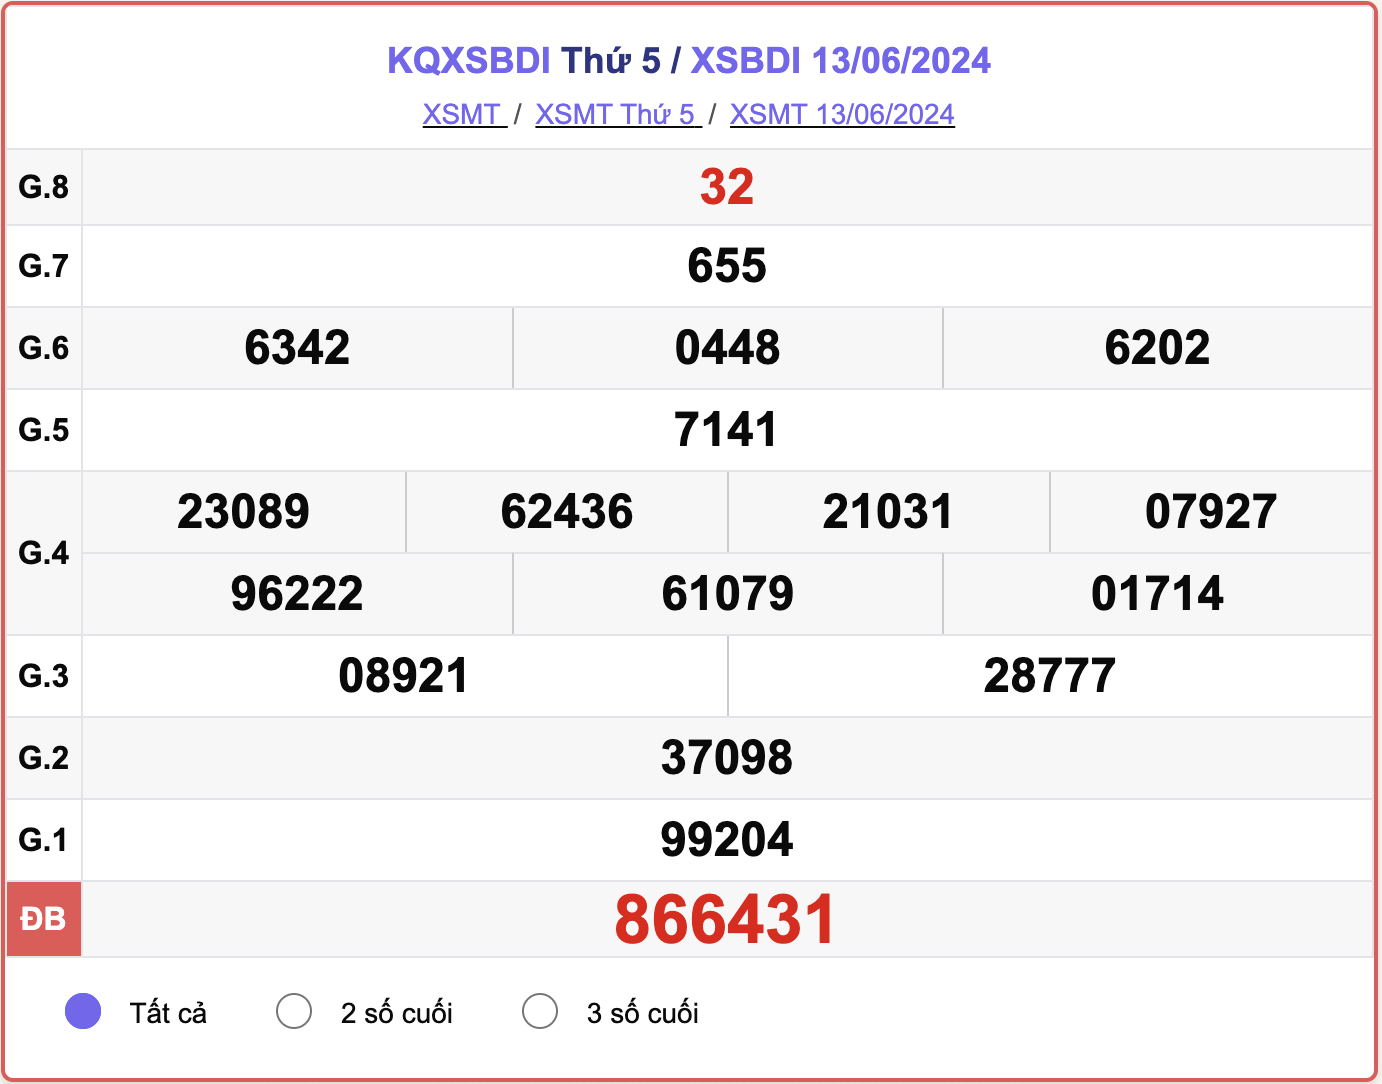 XSBDI 13/6, kết quả xổ số Bình Định hôm nay 13/6/2024.